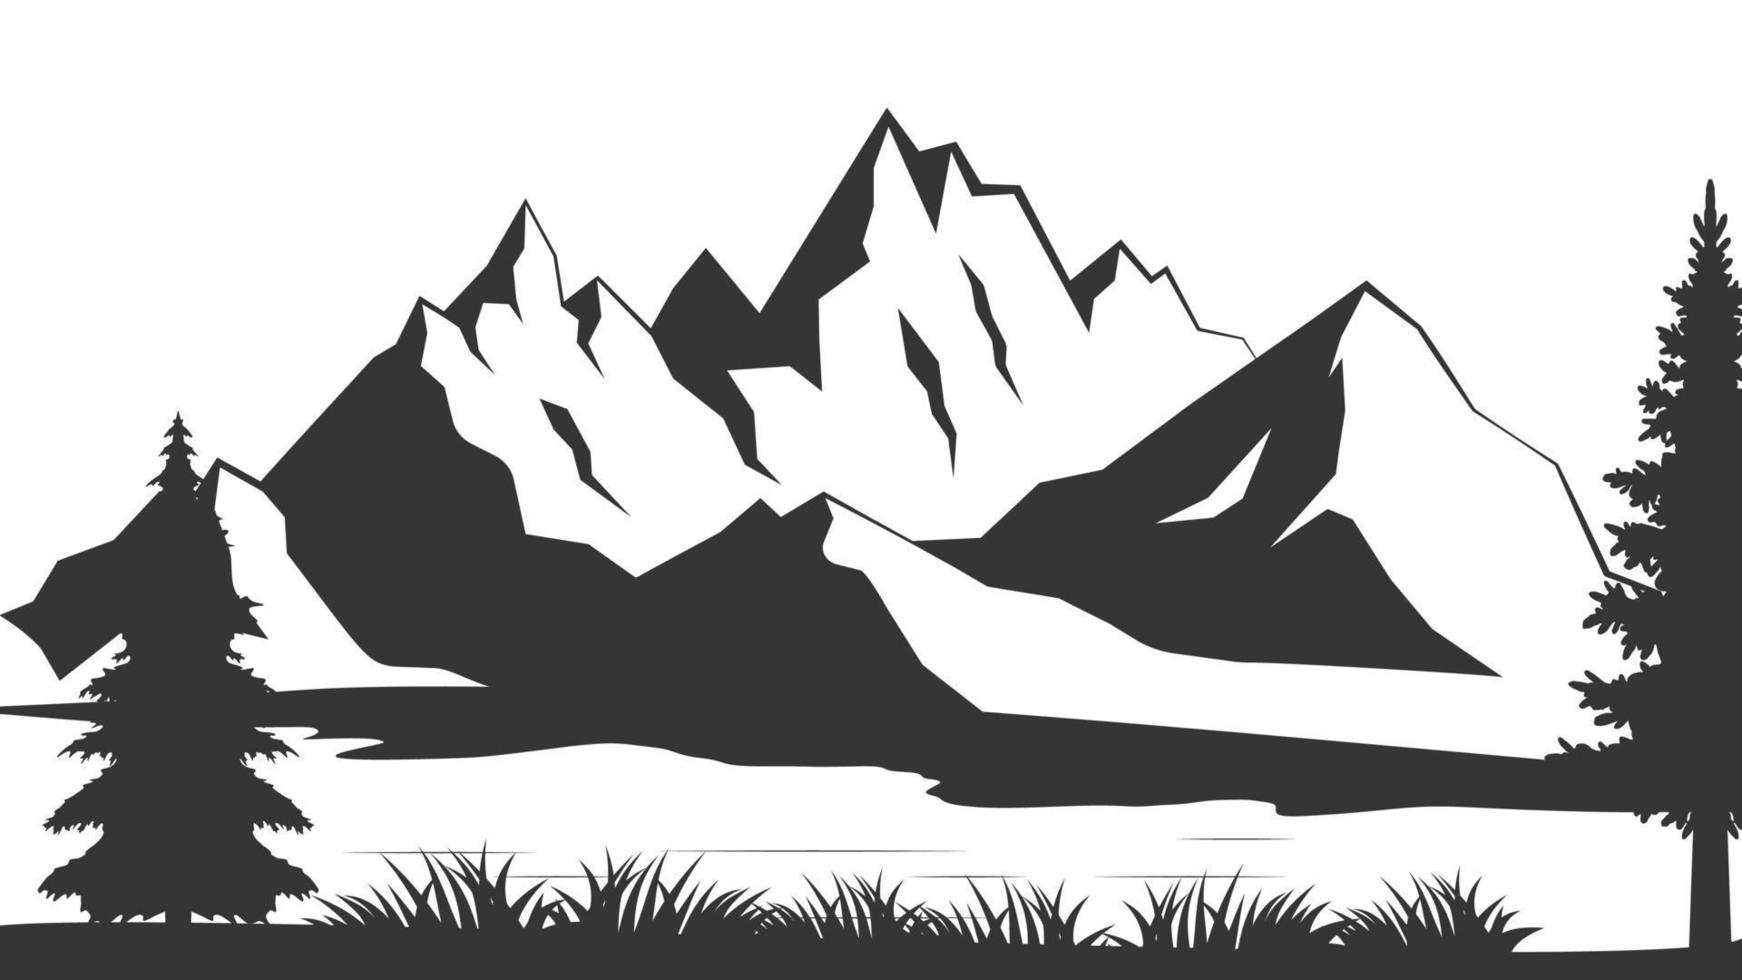 montanha com pinheiros e paisagem preta sobre fundo branco. montanha de ilustração vetorial com pinheiros em fundo branco. ilustração do vetor de montanha.